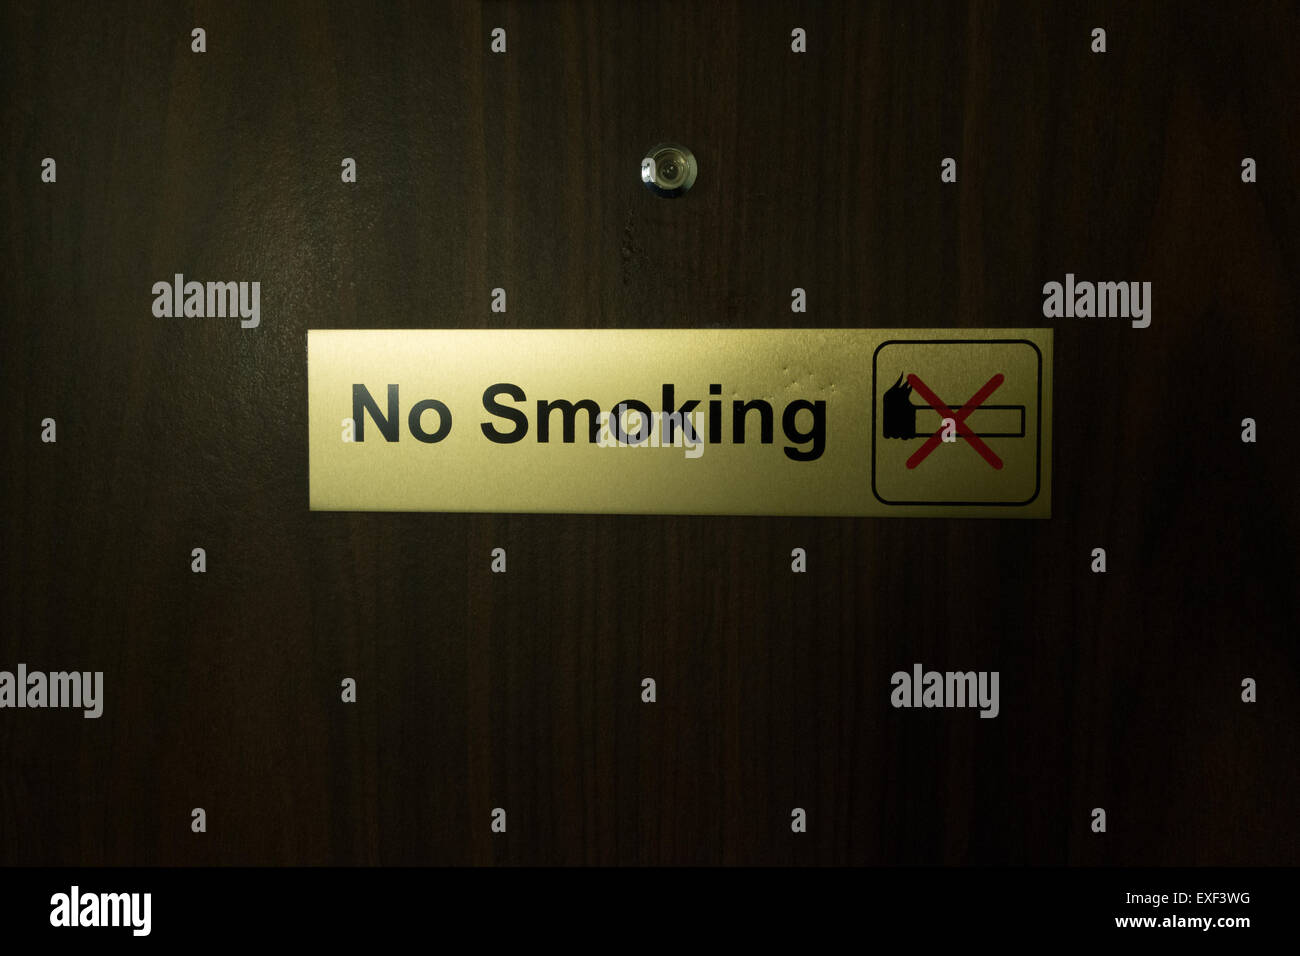 no smoking sign Stock Photo